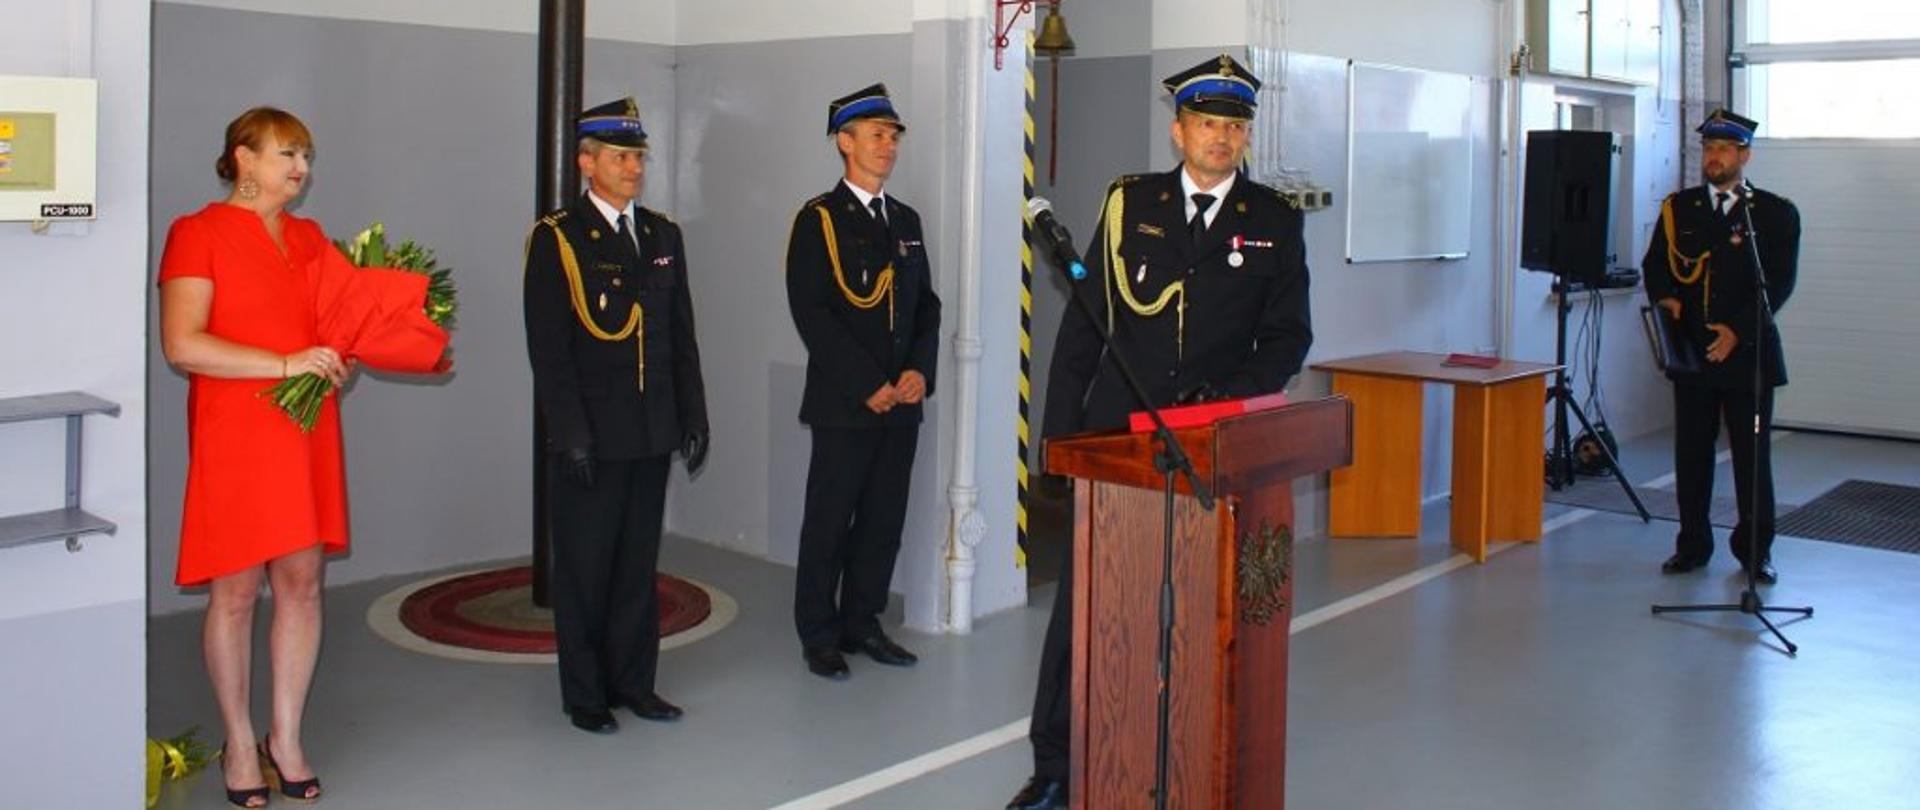 Brygadier Zbigniew Dudzik w mundurze wyjściowym podczas przemówienia okolicznościowego obok najbliższa rodzina i kierownictwo komendy